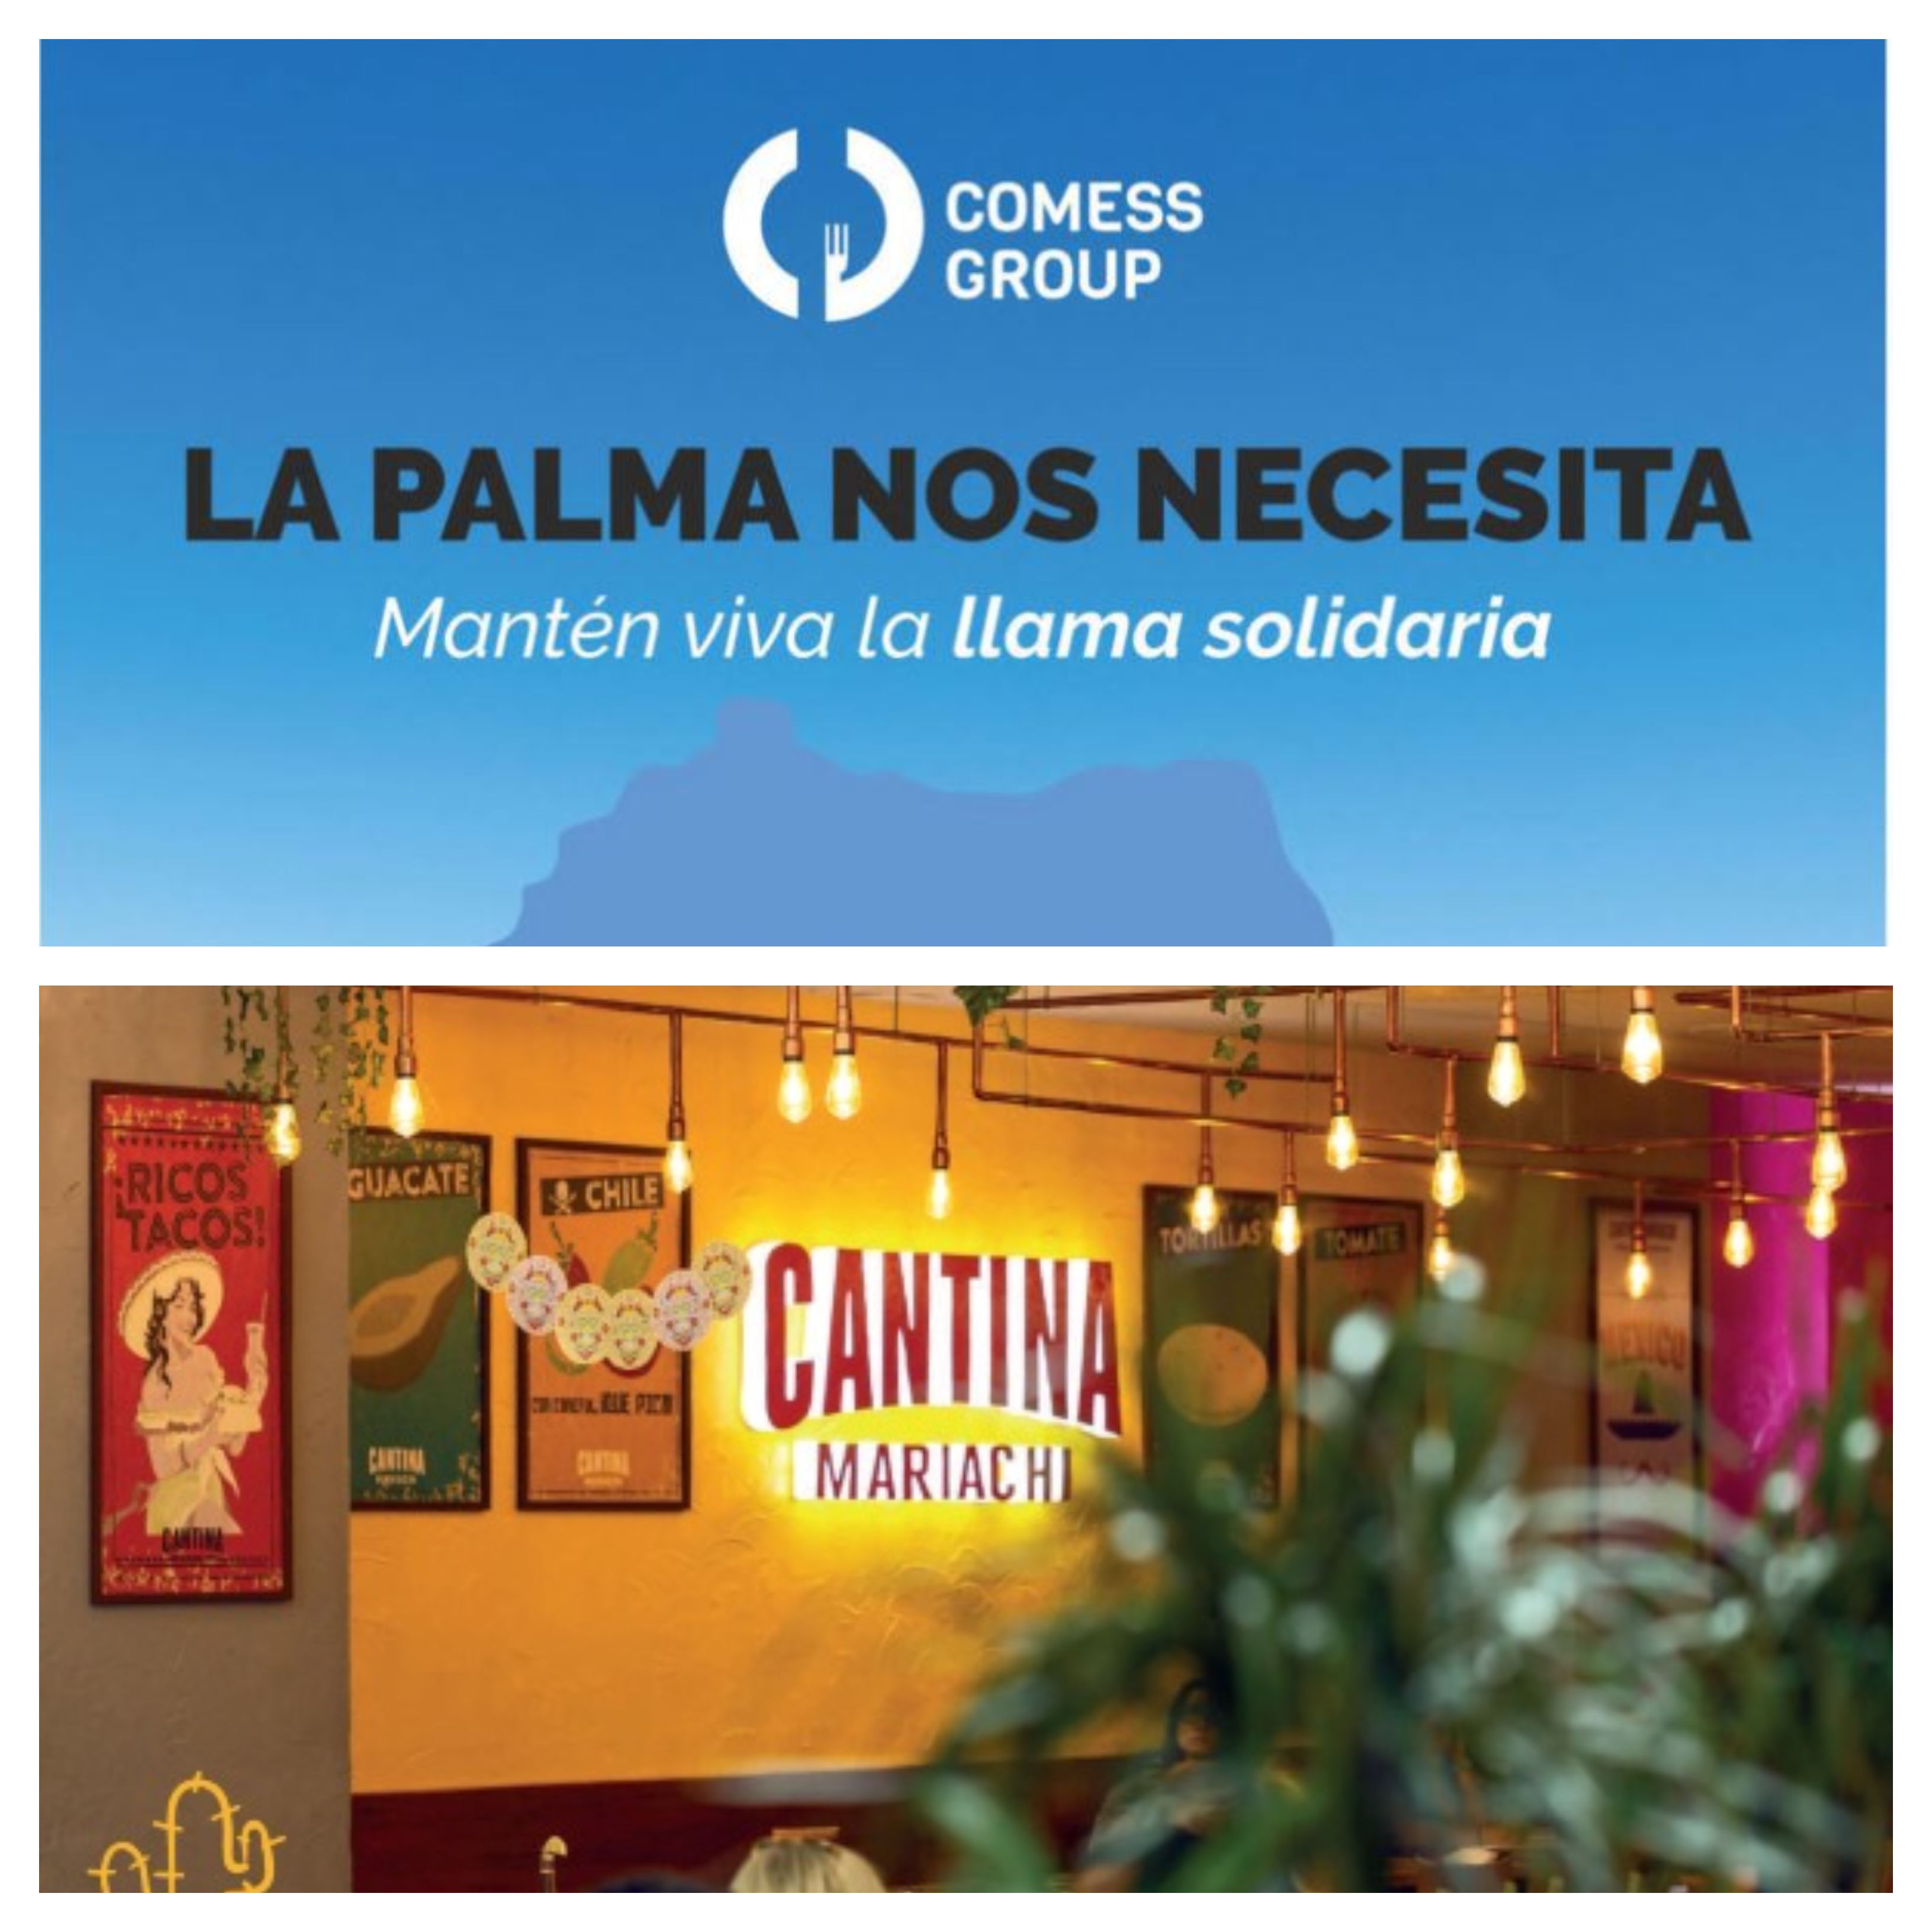 La iniciativa solidaria de Comess Group en apoyo a La Palma